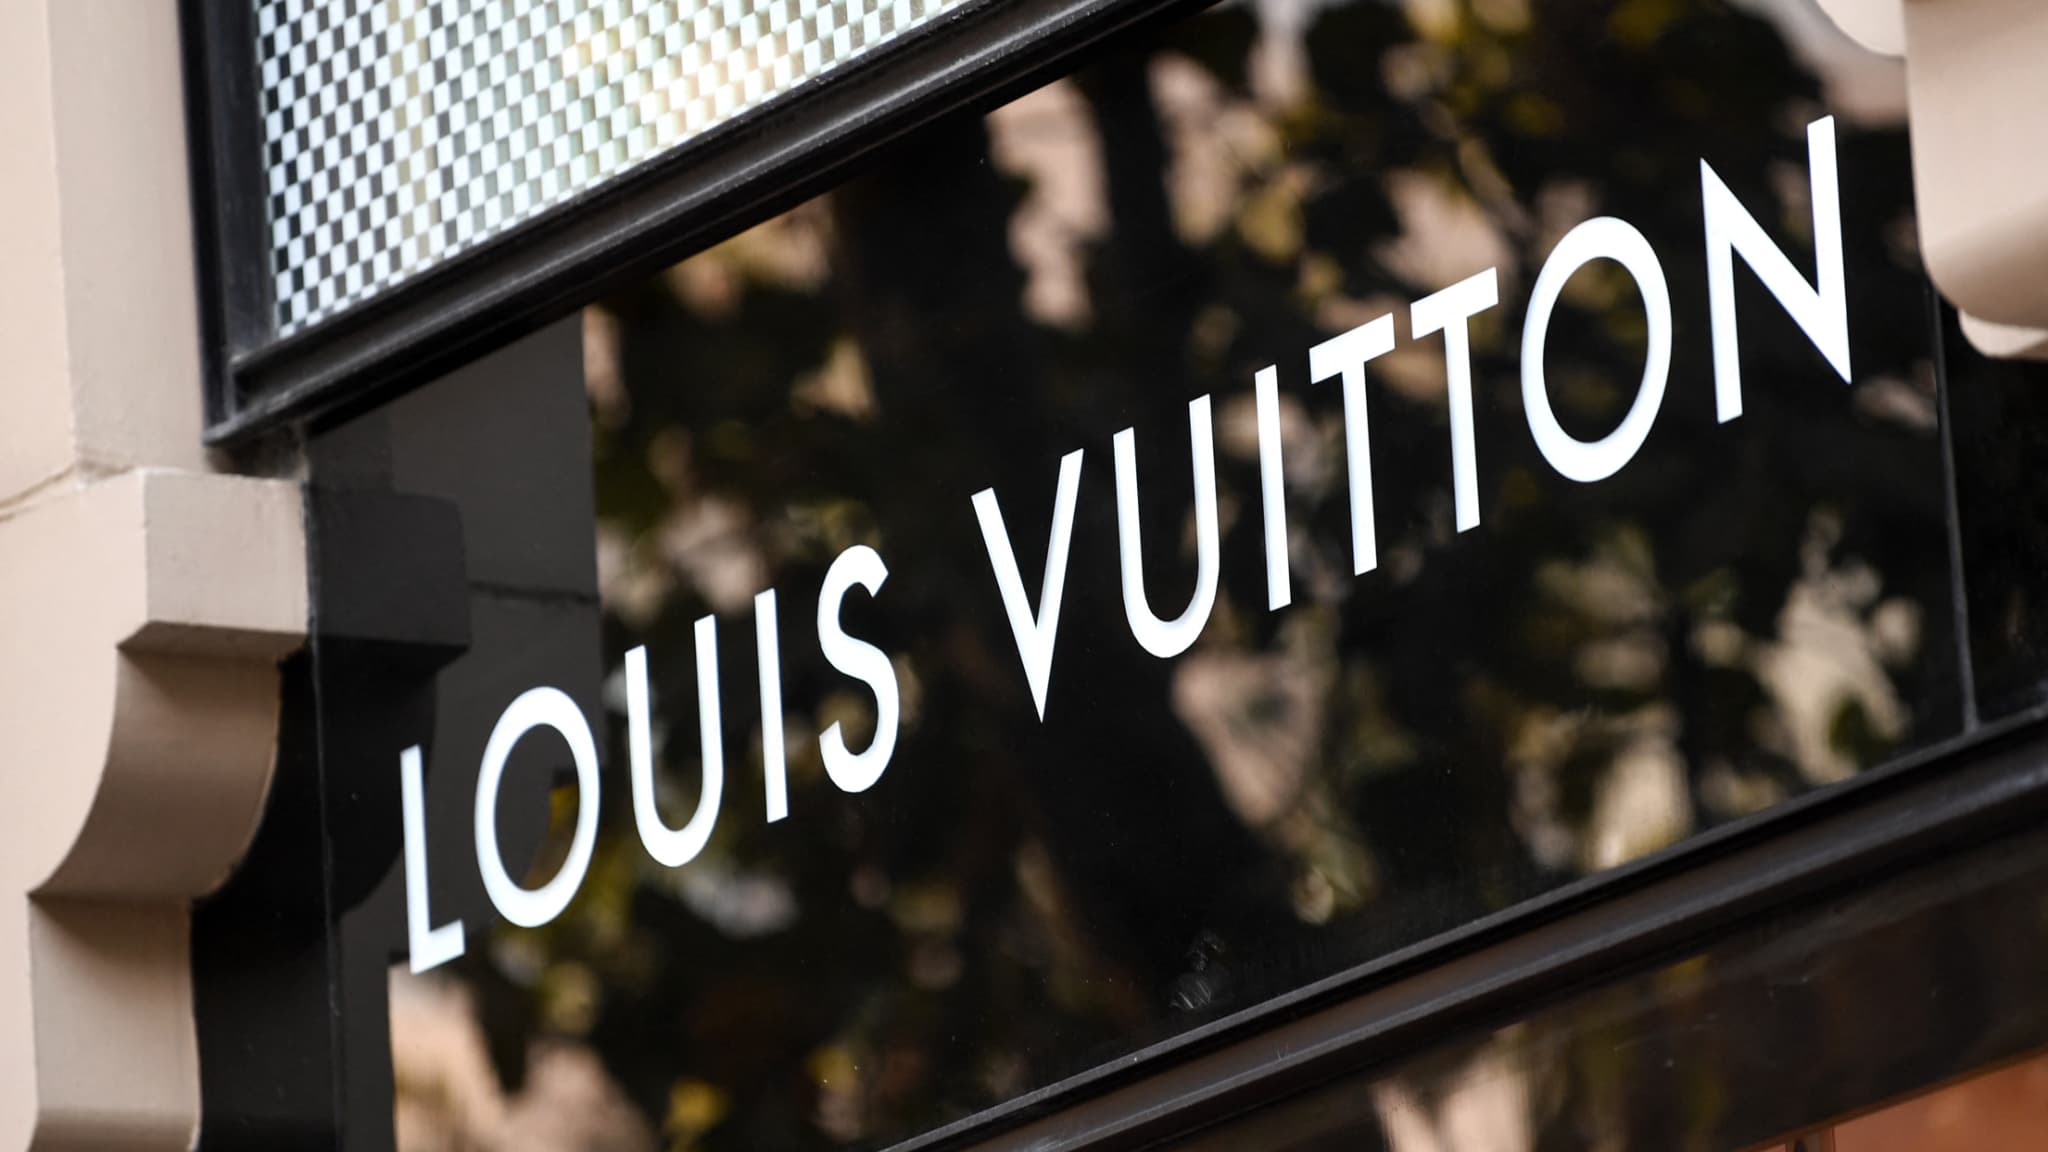 Paris : Cambriolage au domicile de Benoît-Louis Vuitton, héritier de la  famille Vuitton